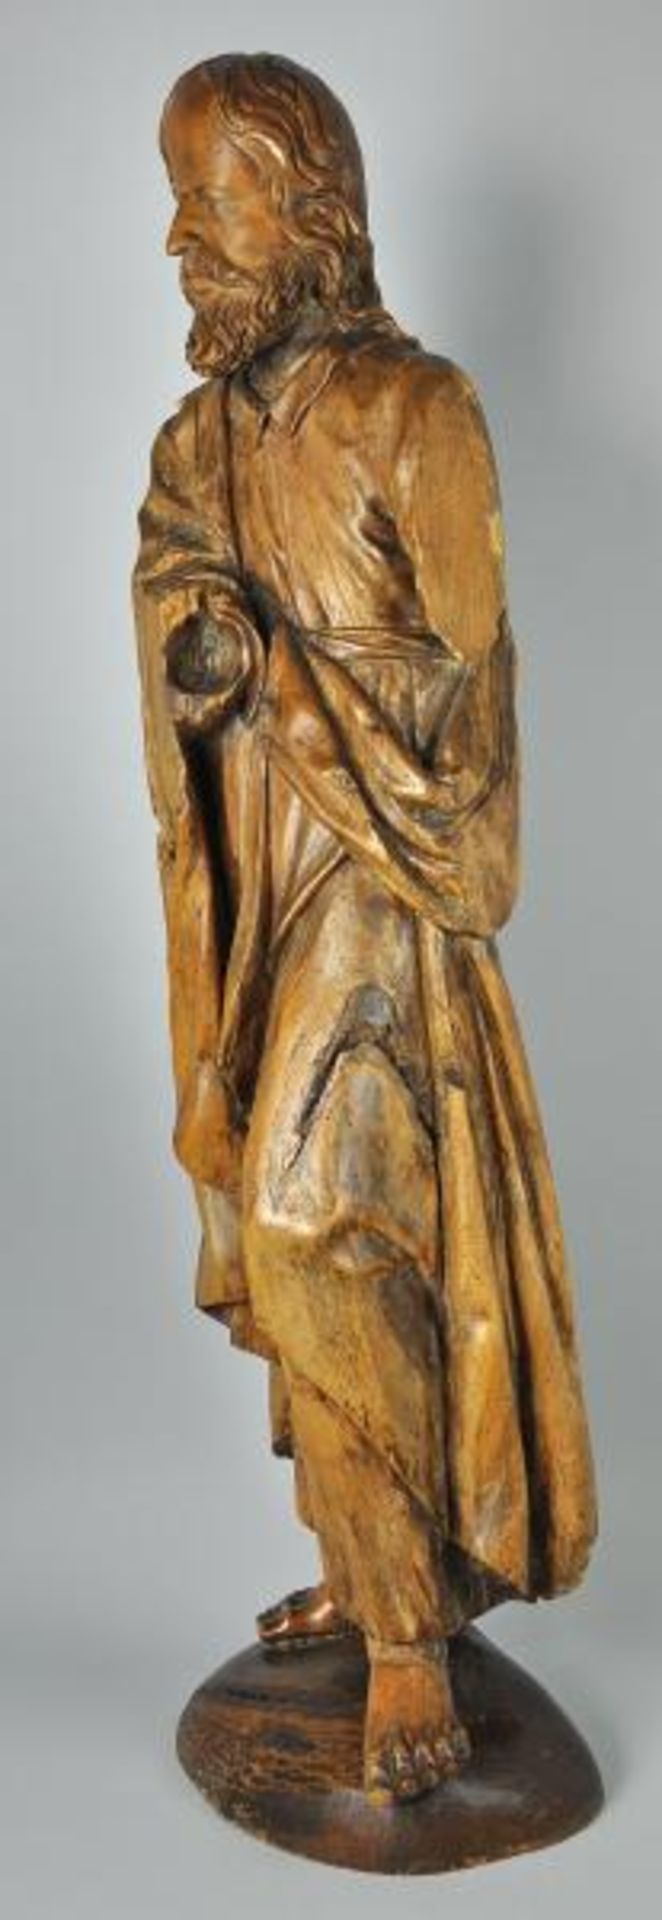 CHRISTUS 3/4 rund geschnitzte Holzfigur, Rückseite gehöhlt, 17./18.Jh, auf späterer ovaler Basis, - Bild 3 aus 4